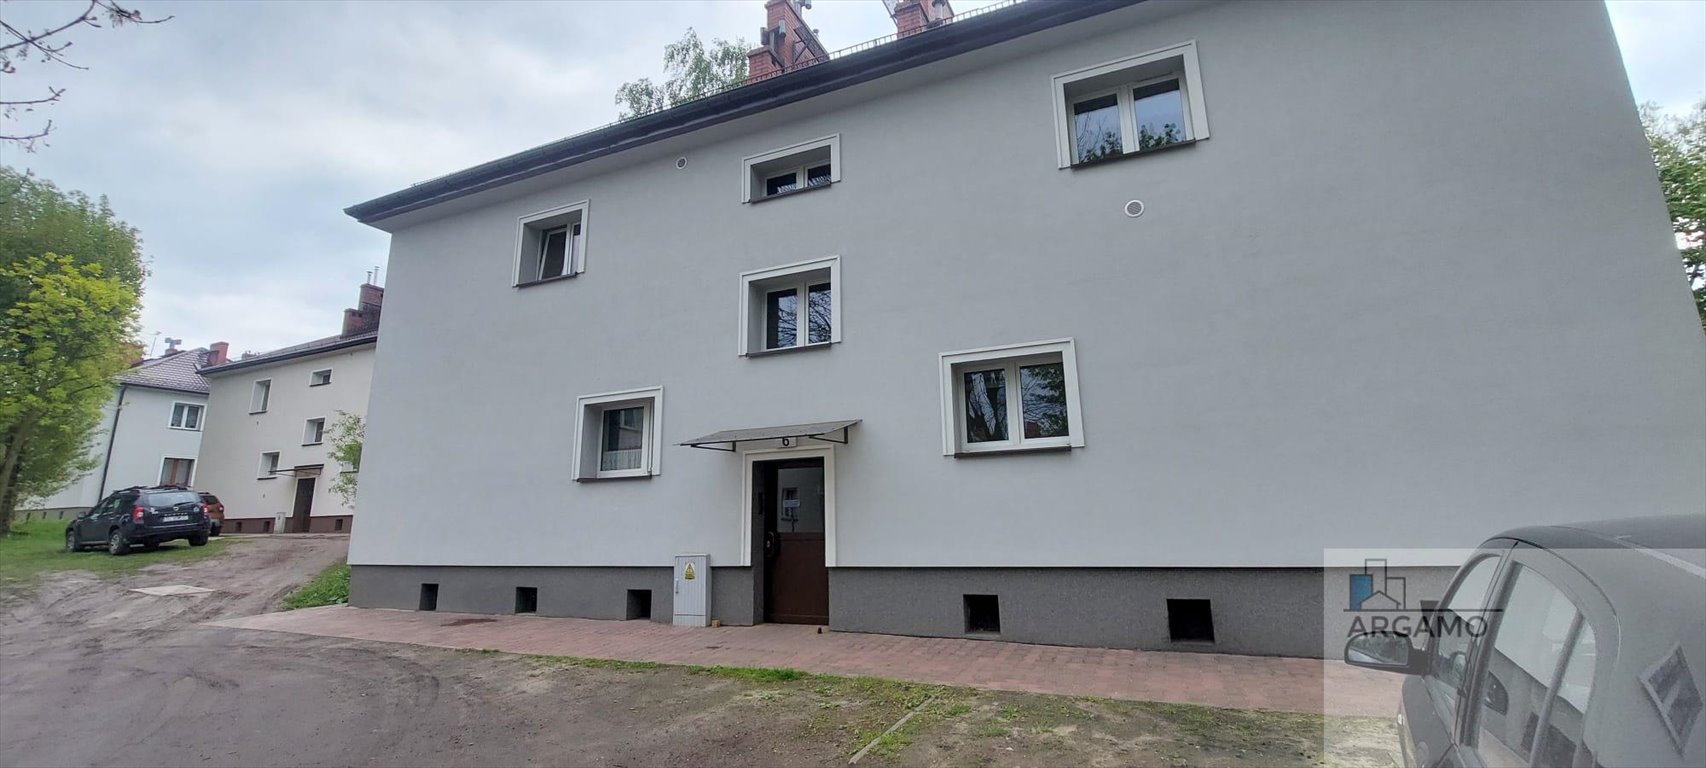 Mieszkanie dwupokojowe na sprzedaż Ruda Śląska, Okrężna  48m2 Foto 13